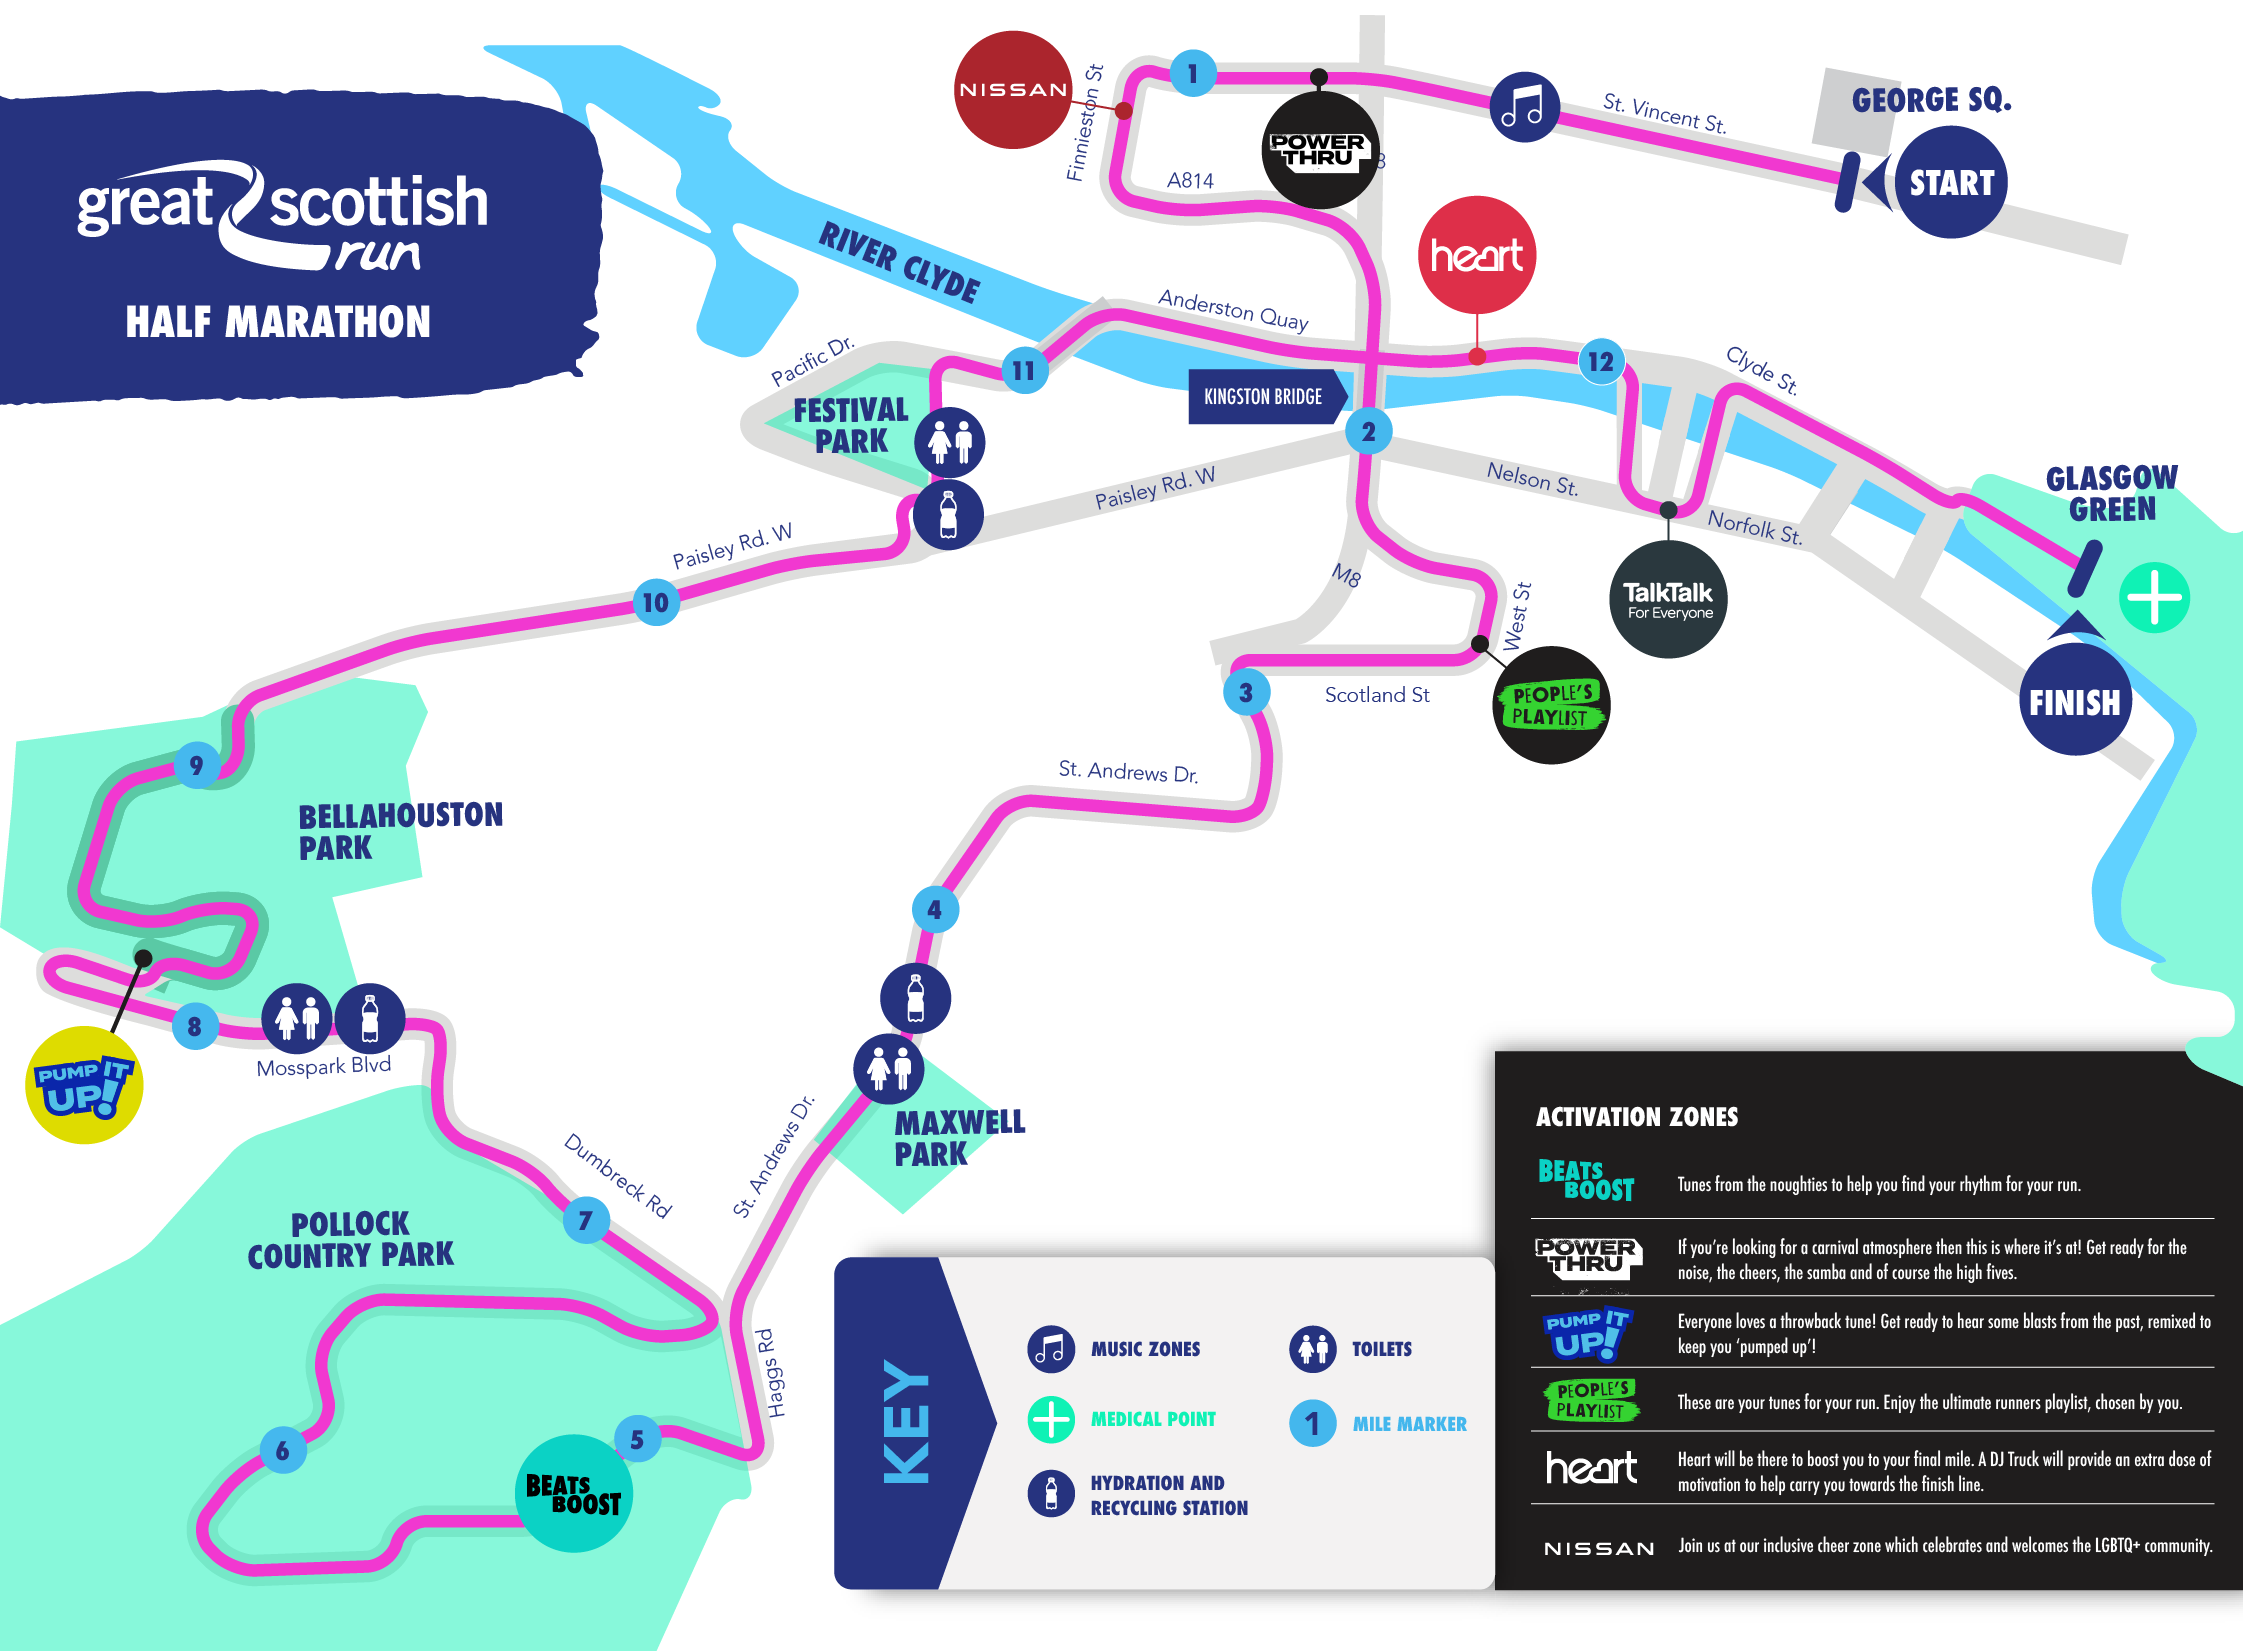 Great Scottish Run 10k and Half Marathon Glasgow